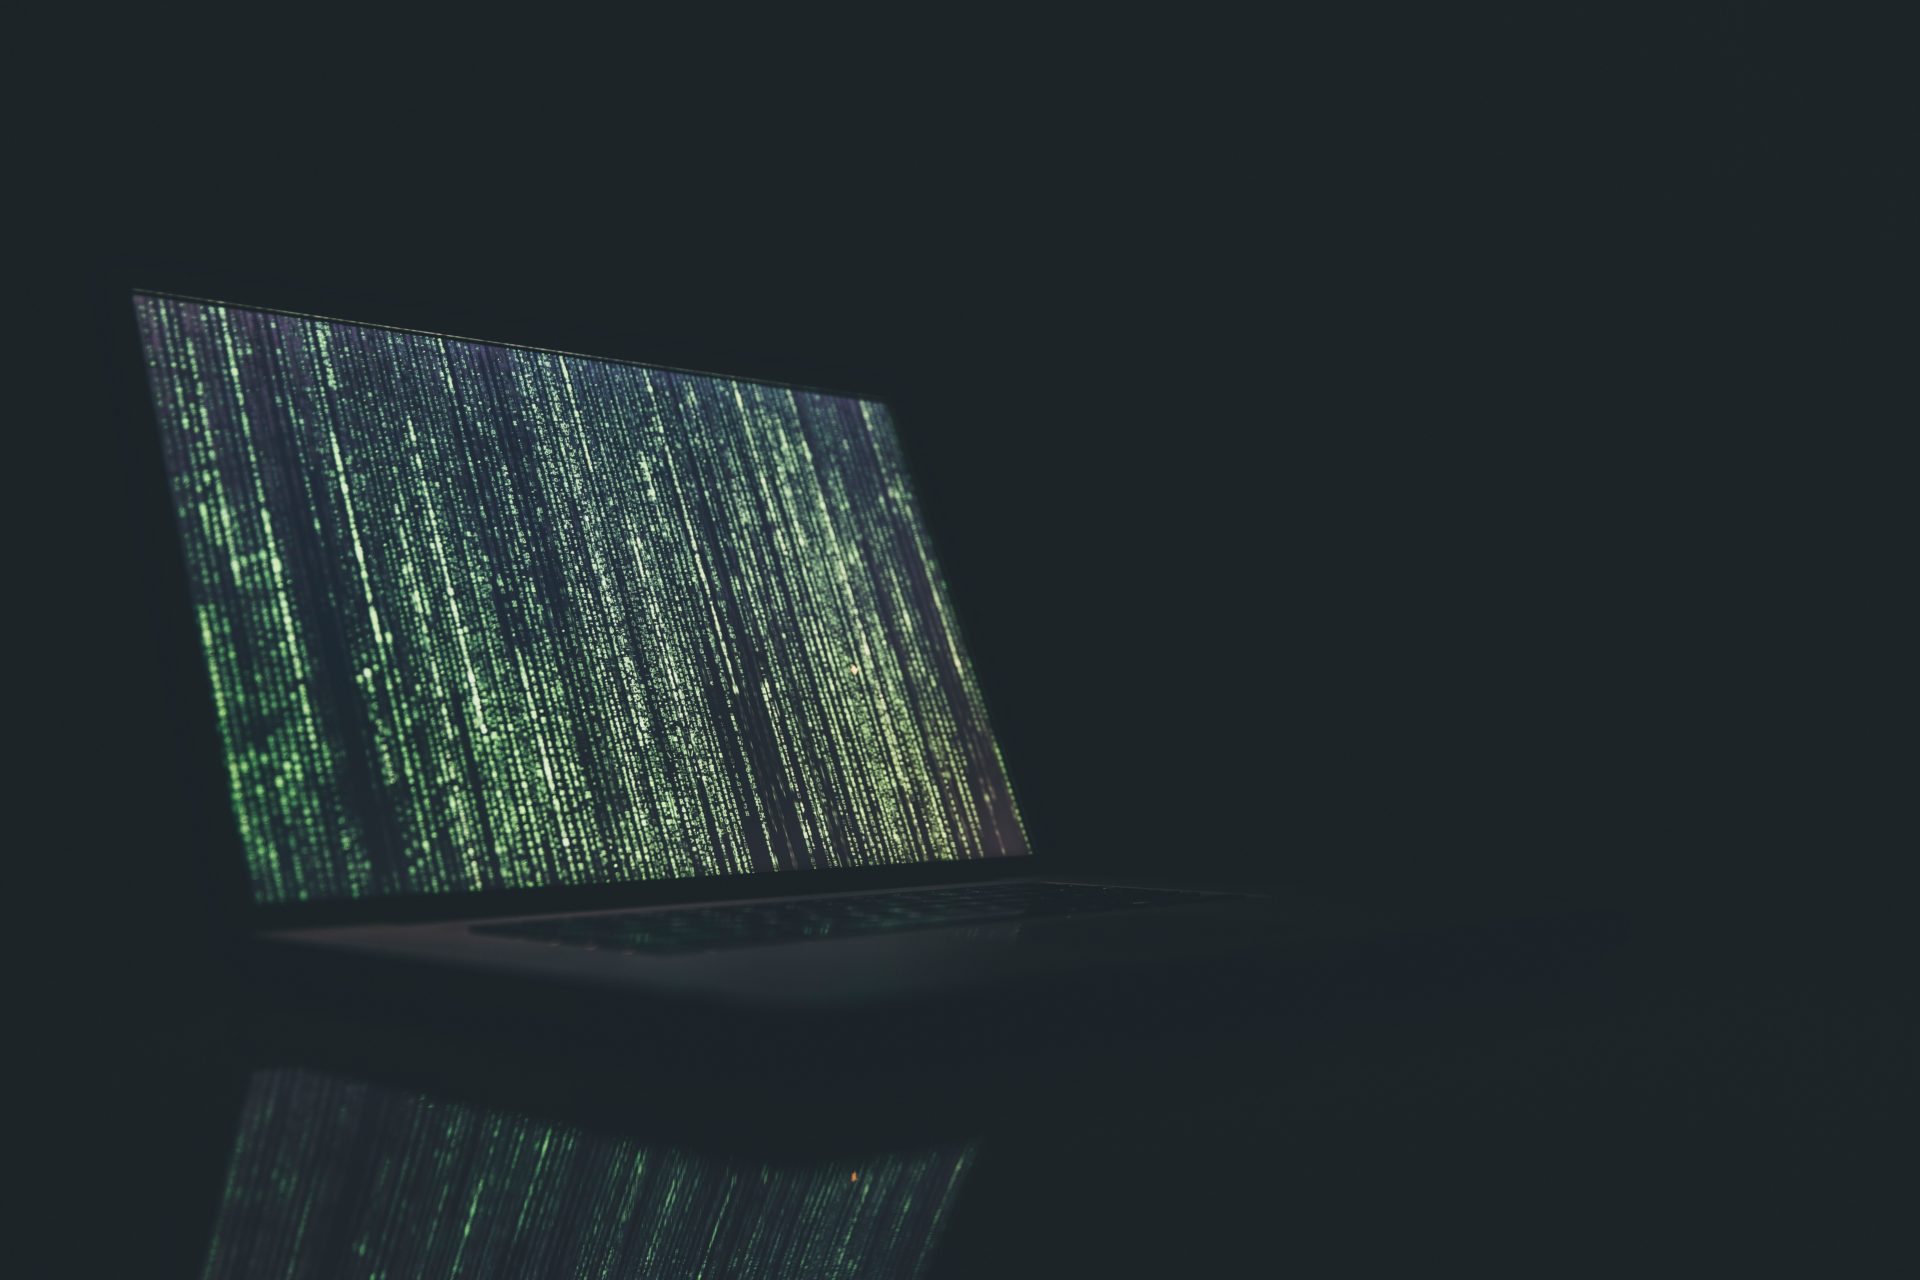  data sell 130 million web hackers hacker 